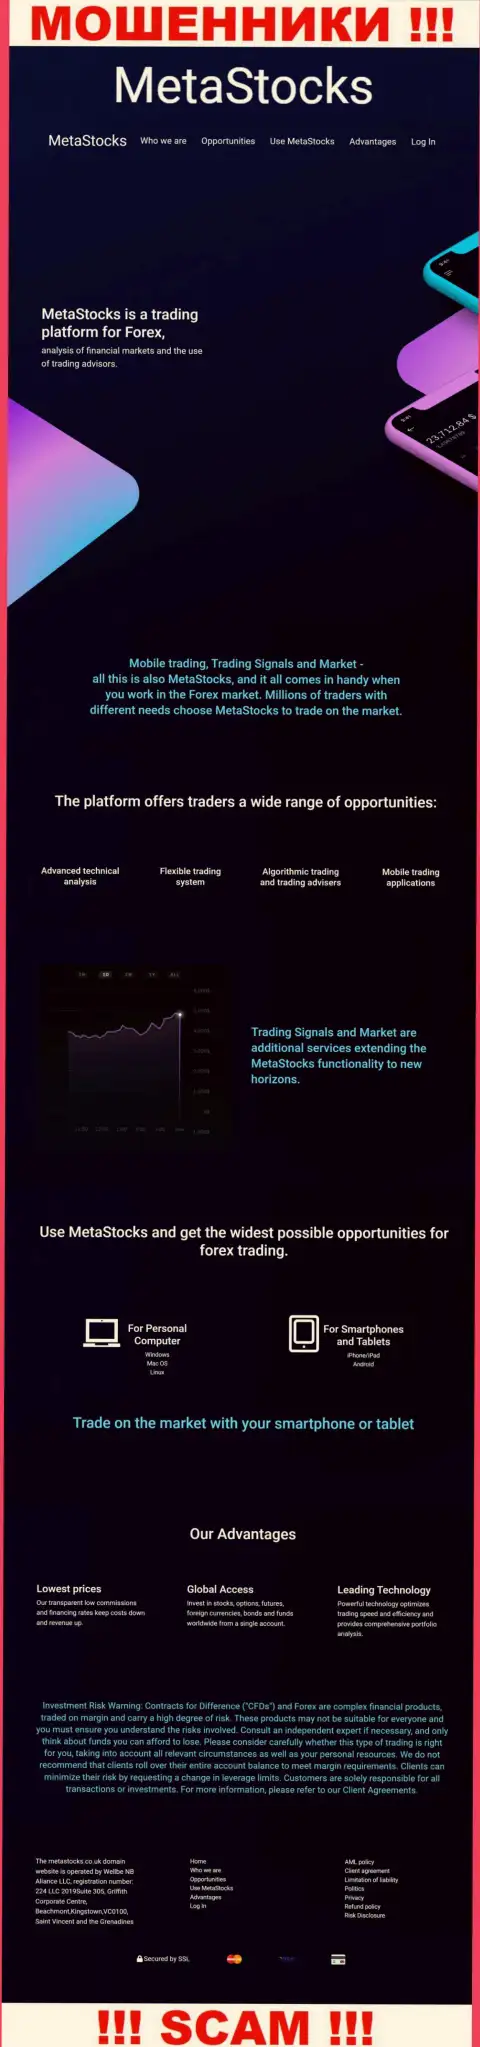 Лживая информация от махинаторов Meta Stocks на их официальном сайте MetaStocks Co Uk